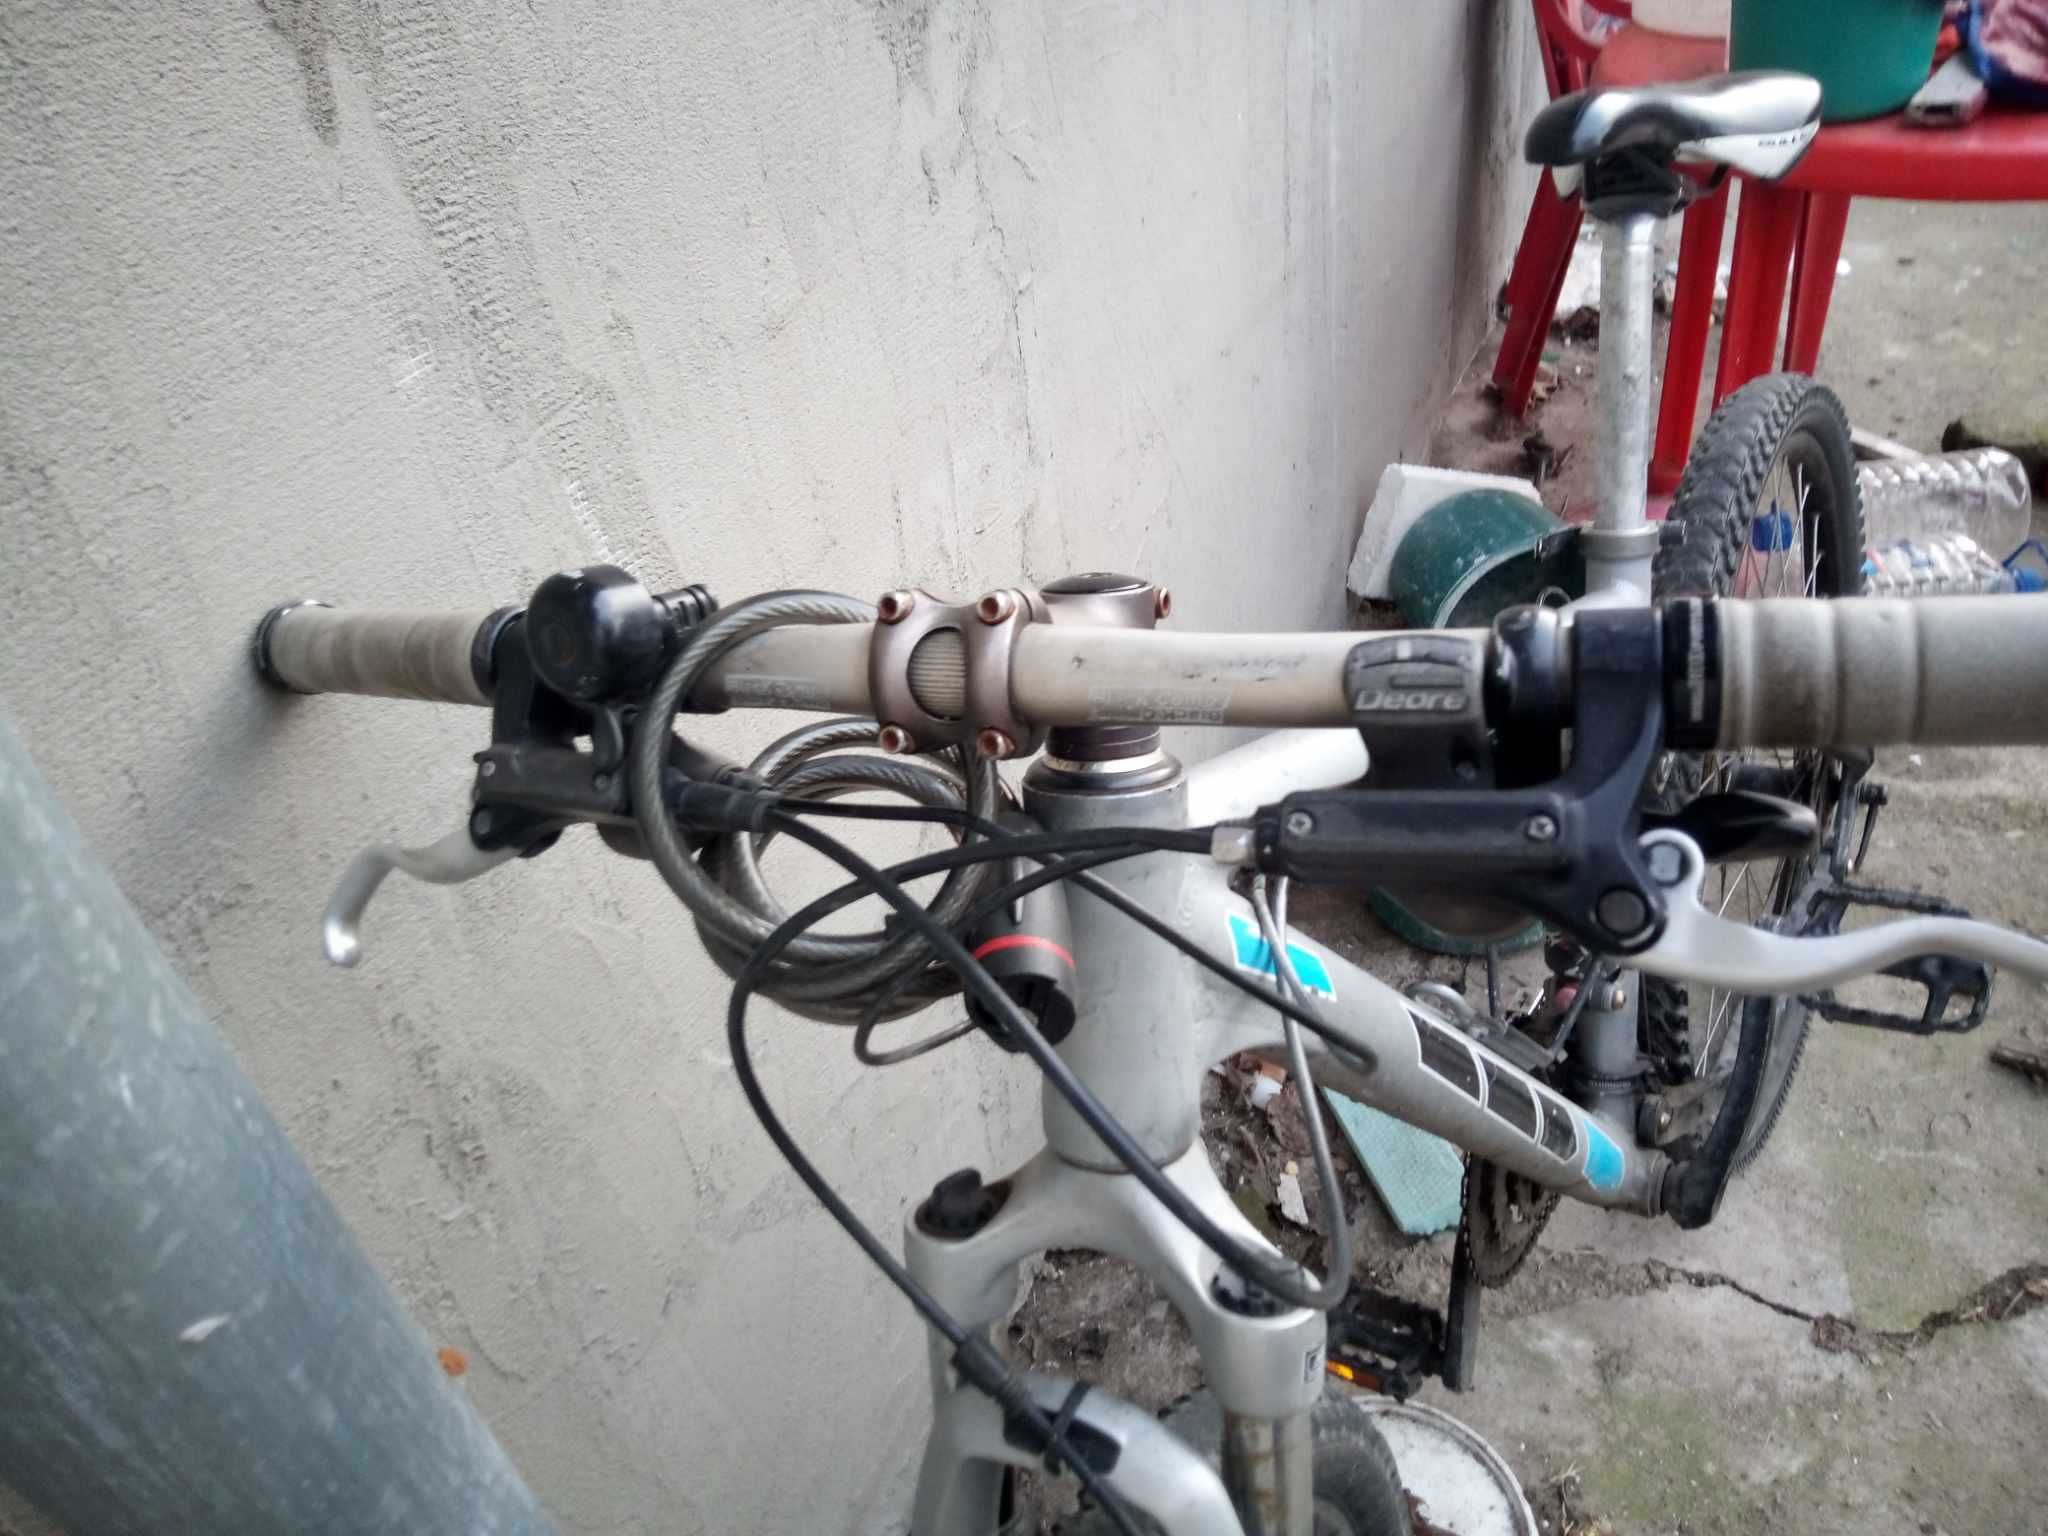 biciclete full suspension